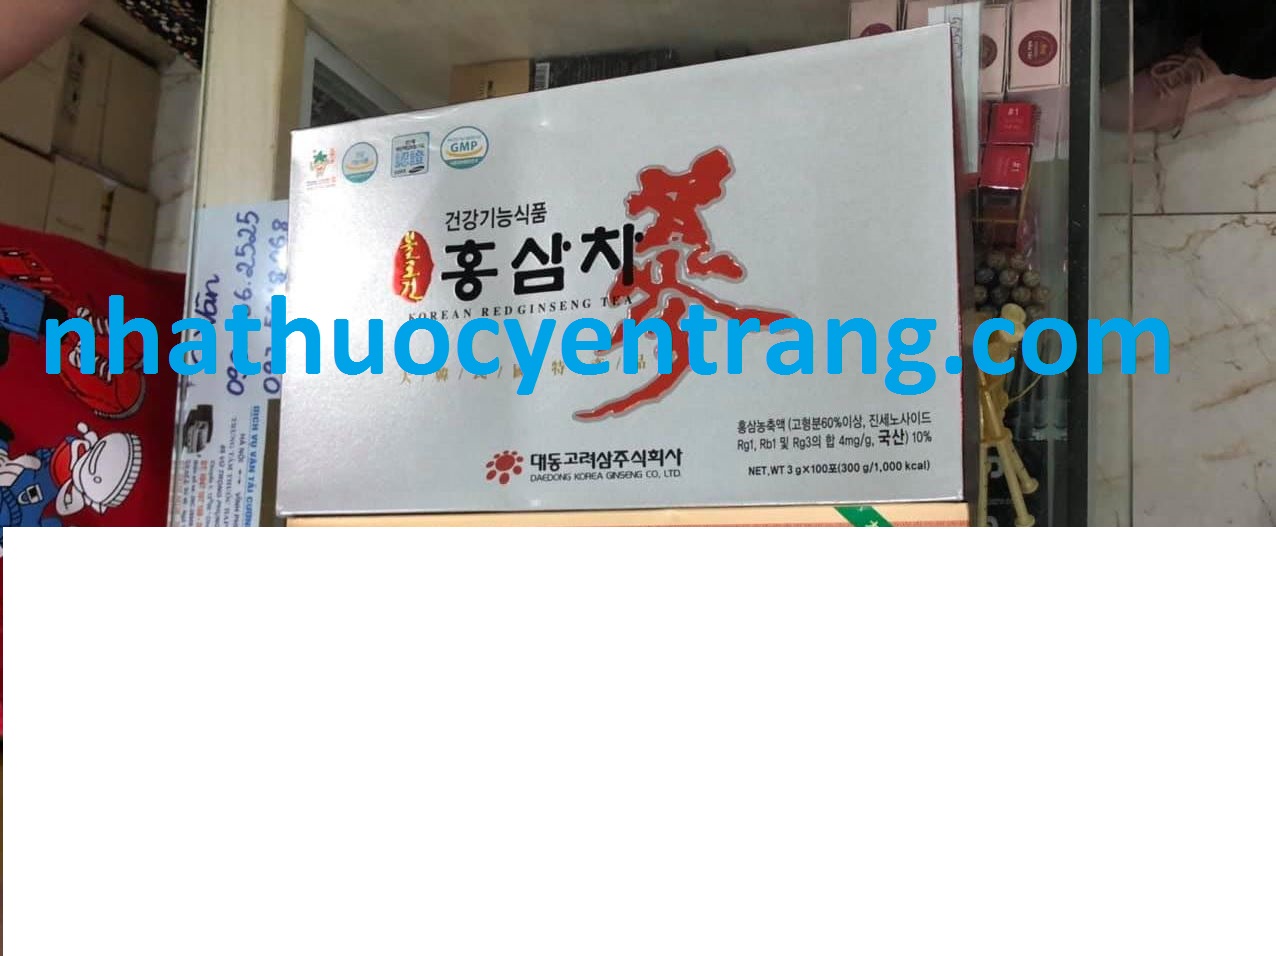 Trà hồng sâm Hàn Quốc cao cấp Deadong 100 gói